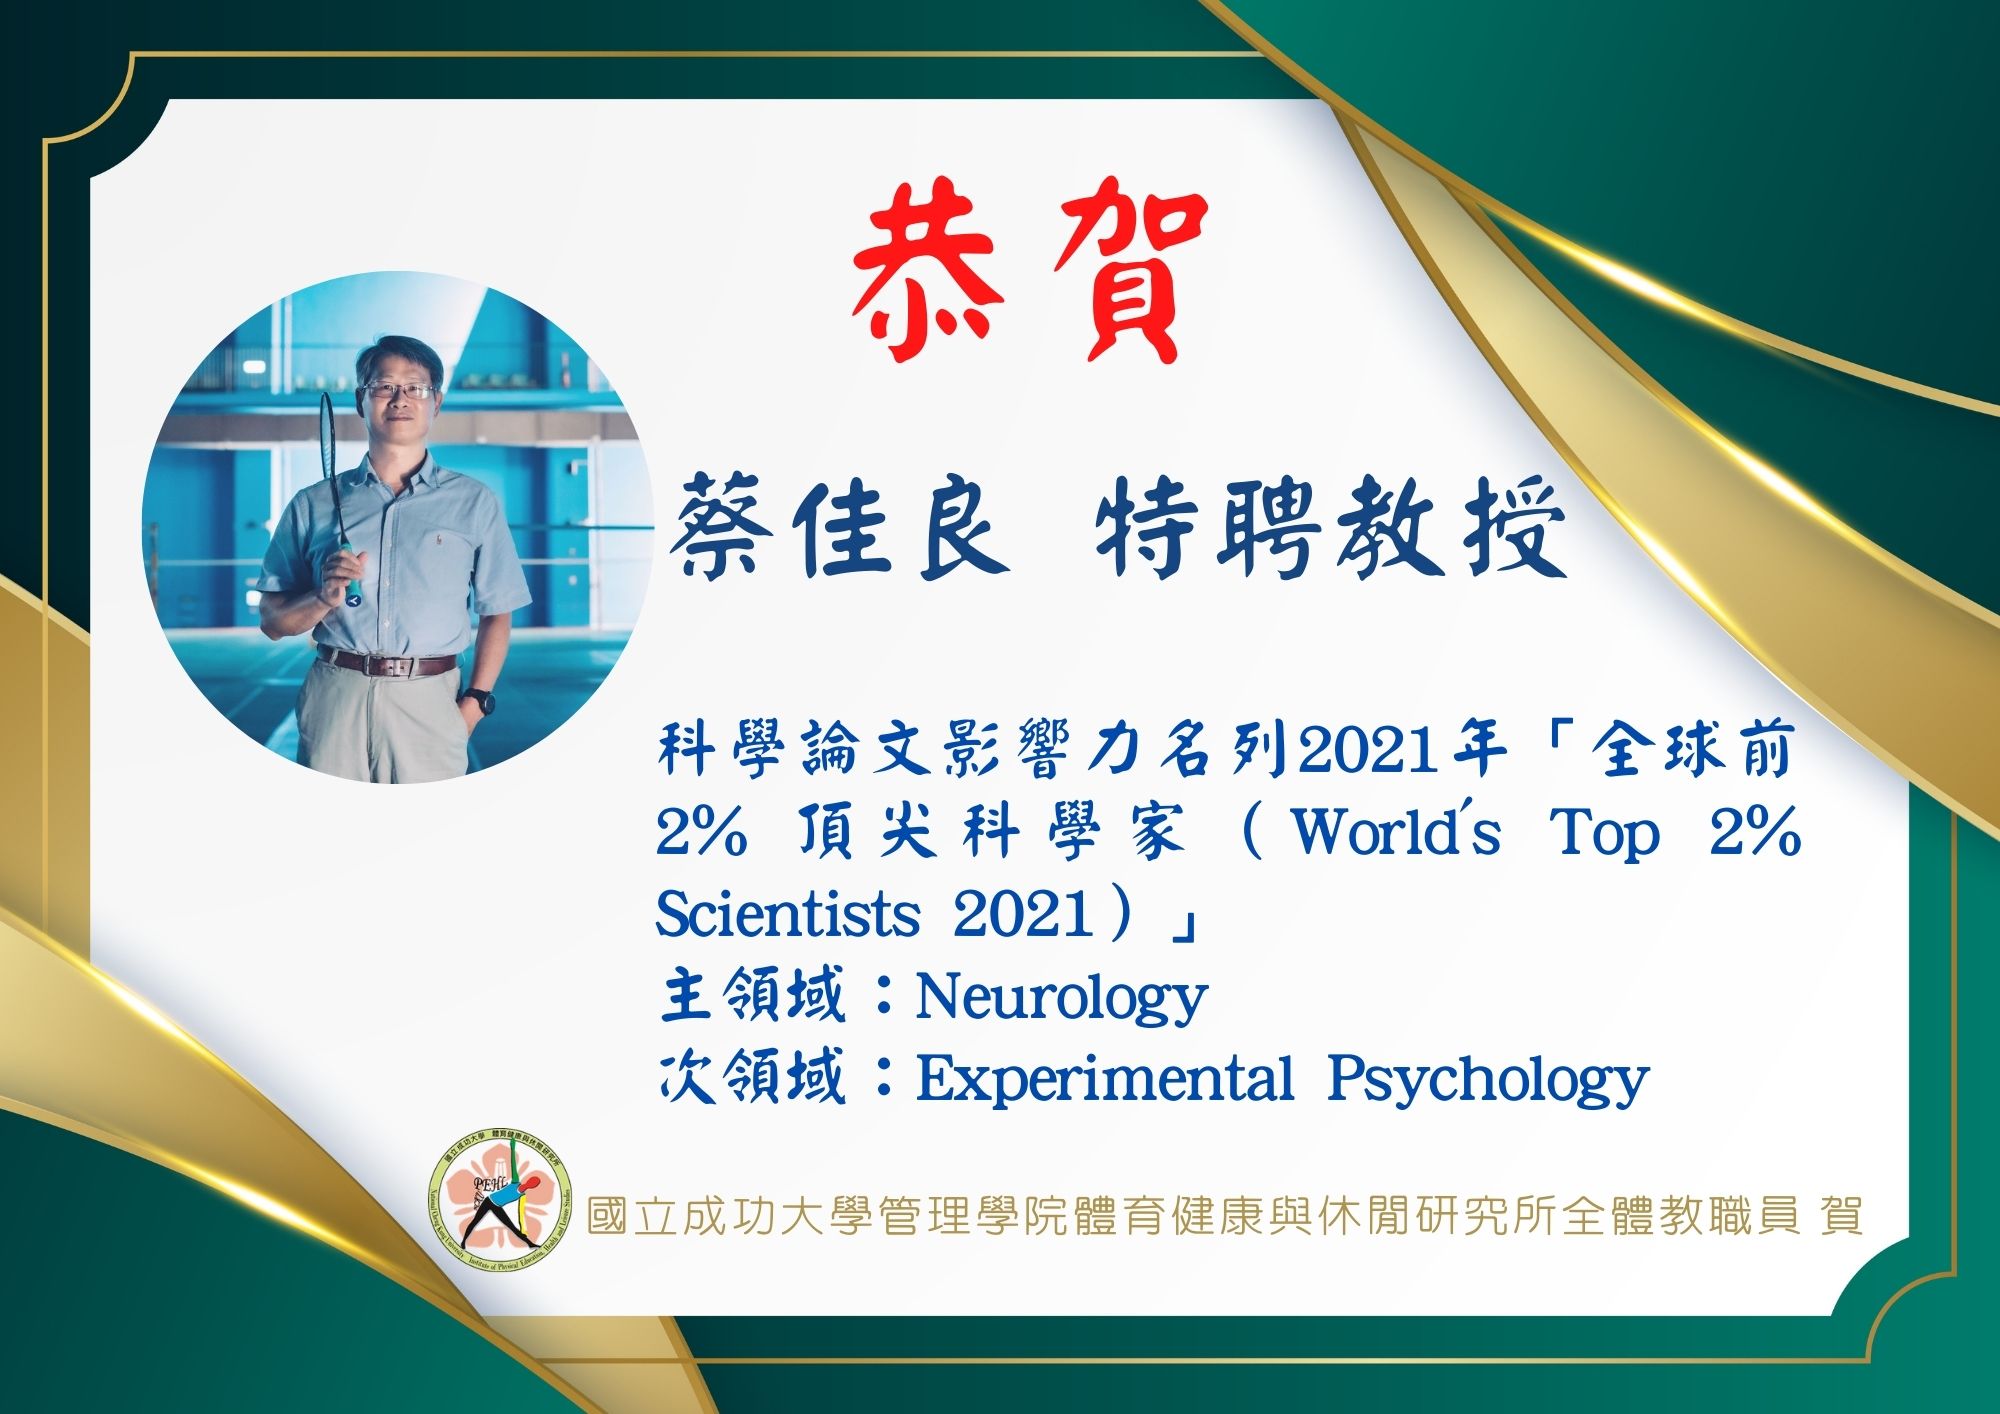 蔡佳良特聘教授榮獲「全球前2%頂尖科學家榜單（World’s Top 2% Scientists 2021）」殊榮